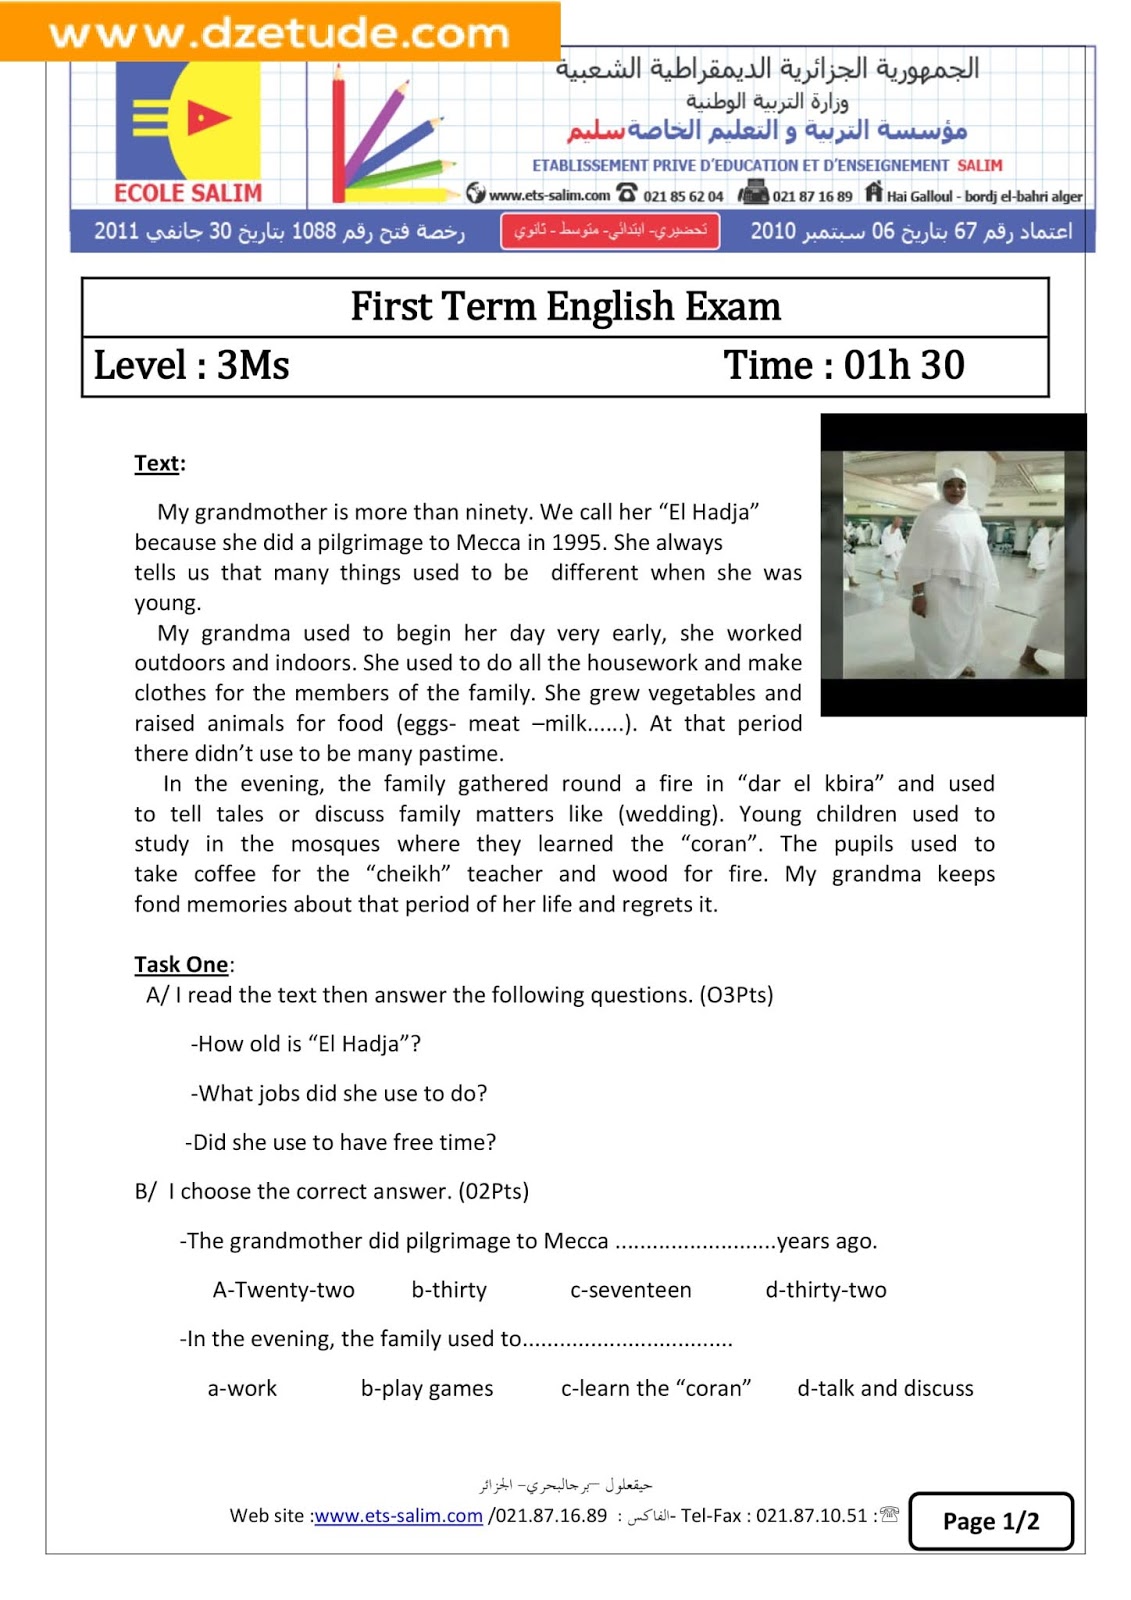 إختبار الانجليزية الفصل الأول للسنة الثالثة متوسط - الجيل الثاني نموذج 1